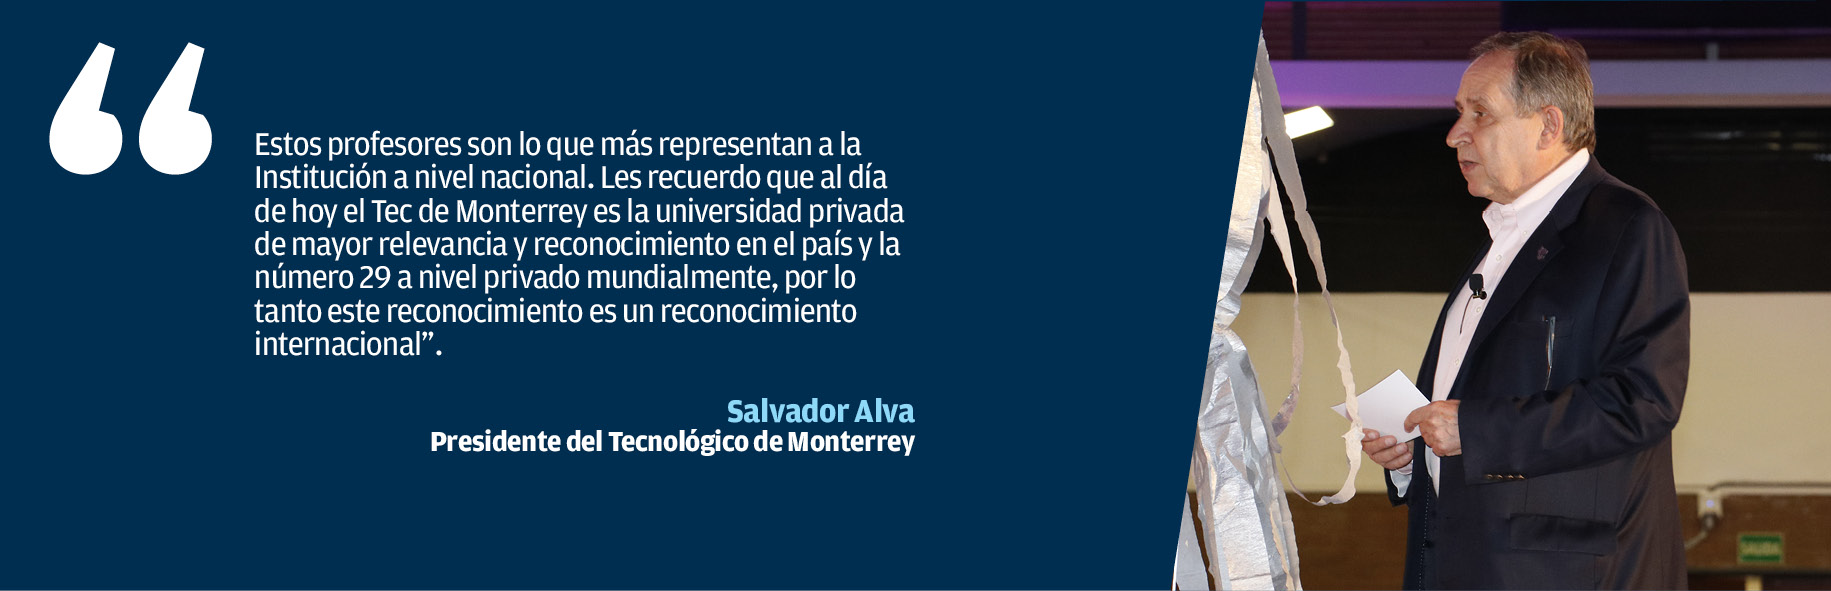 Salvador Alva-profesor inspirador